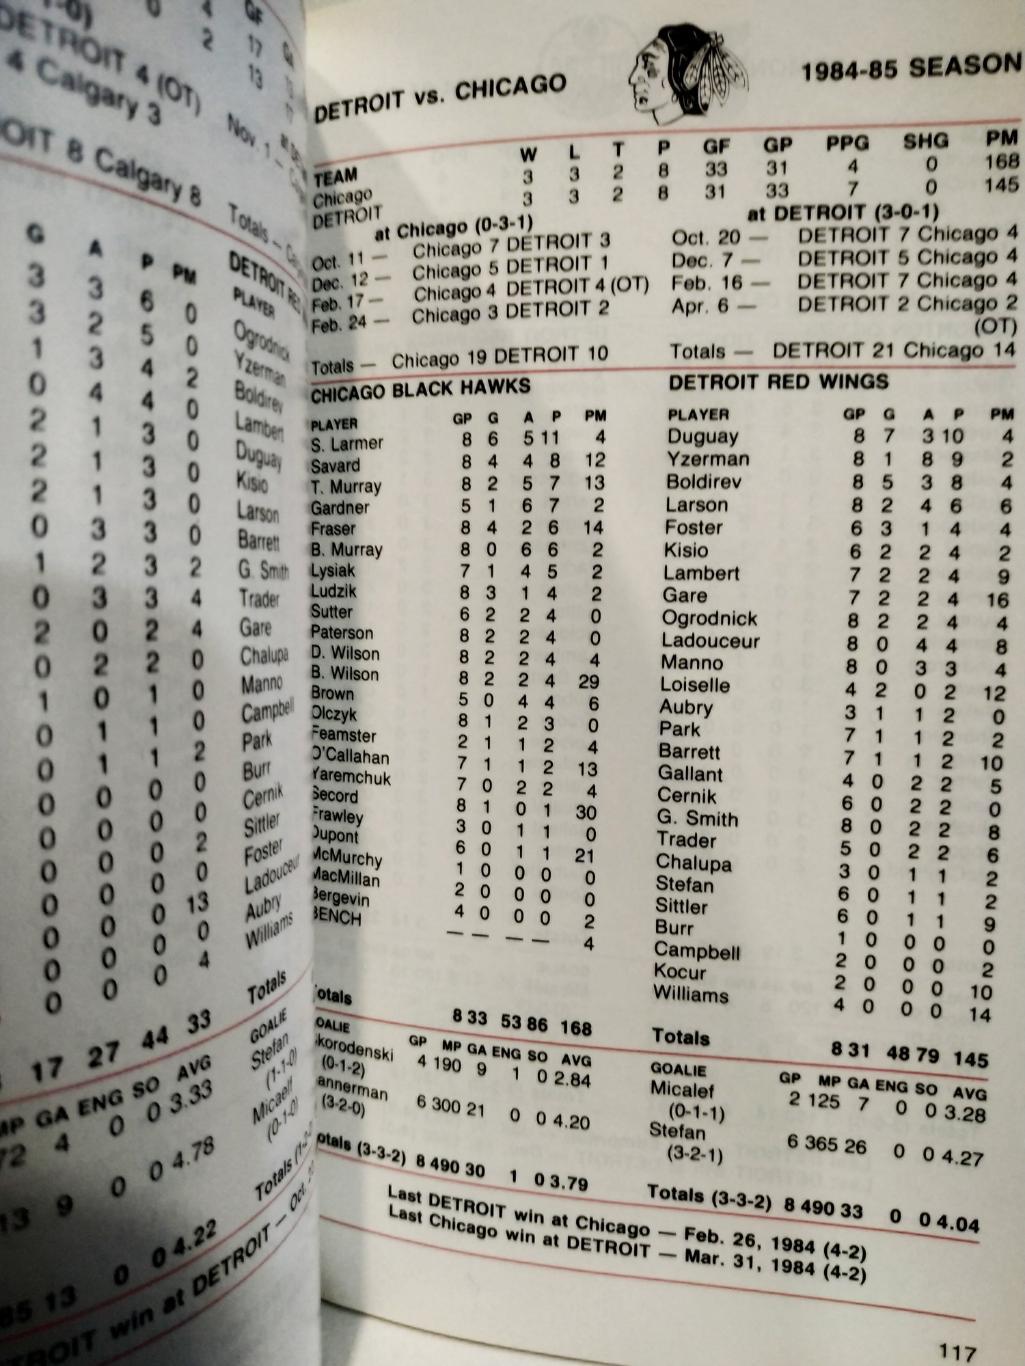 ХОККЕЙ СПРАВОЧНИК ЕЖЕГОДНИК НХЛ ДЕТРОЙТ 1985-86 DETROIT RED WINGS MEDIA GUIDE 6